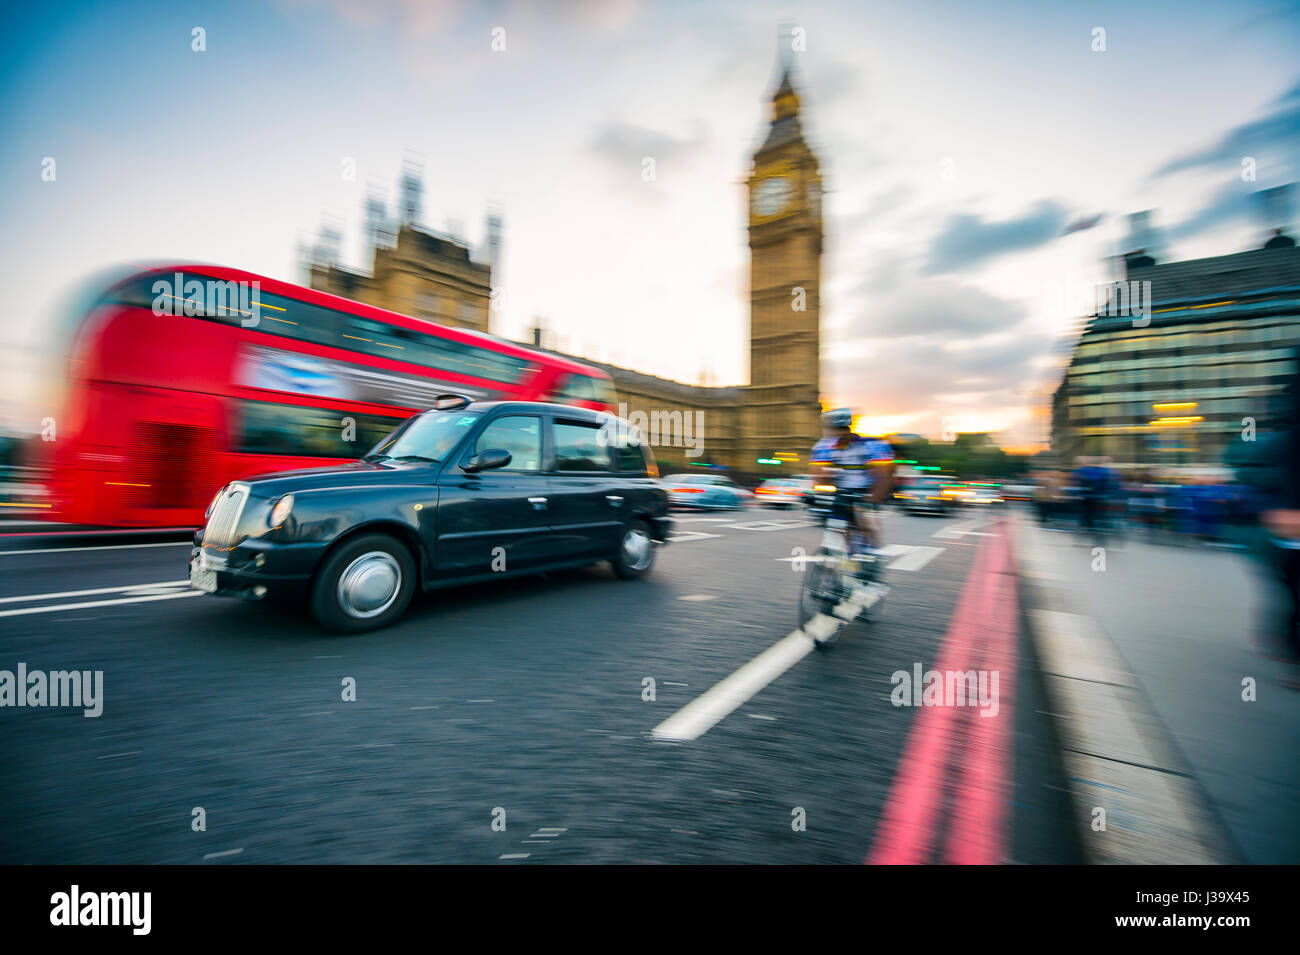 Londres - Octubre 4, 2016: el tráfico pasa en motion blur en Westminster Bridge, un concurrido cruce que pasa junto a las Casas del Parlamento y el Big Ben. Foto de stock